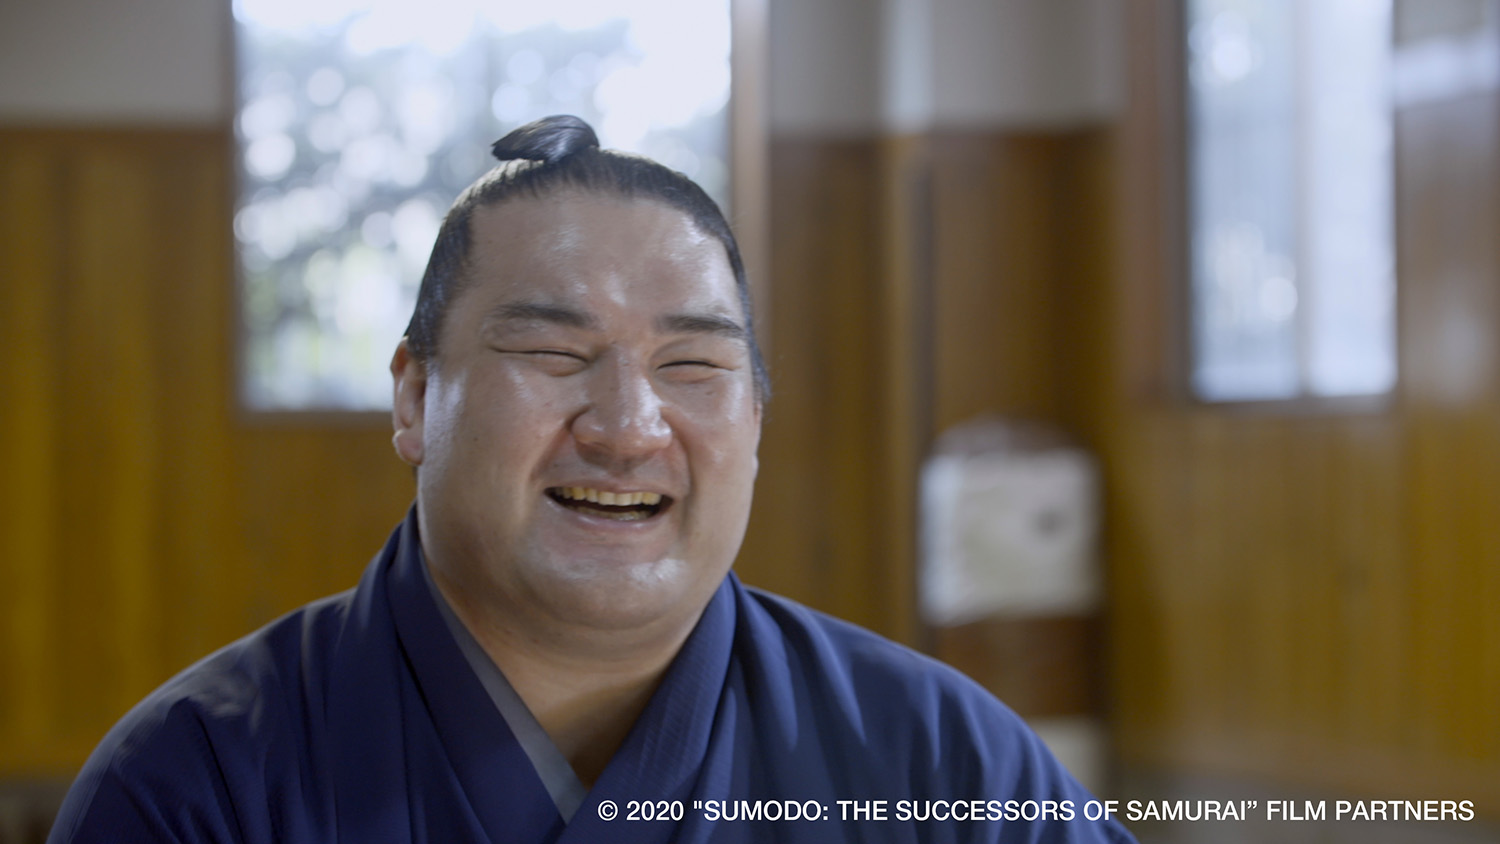 Sumodo Successors of Samurai Film Review